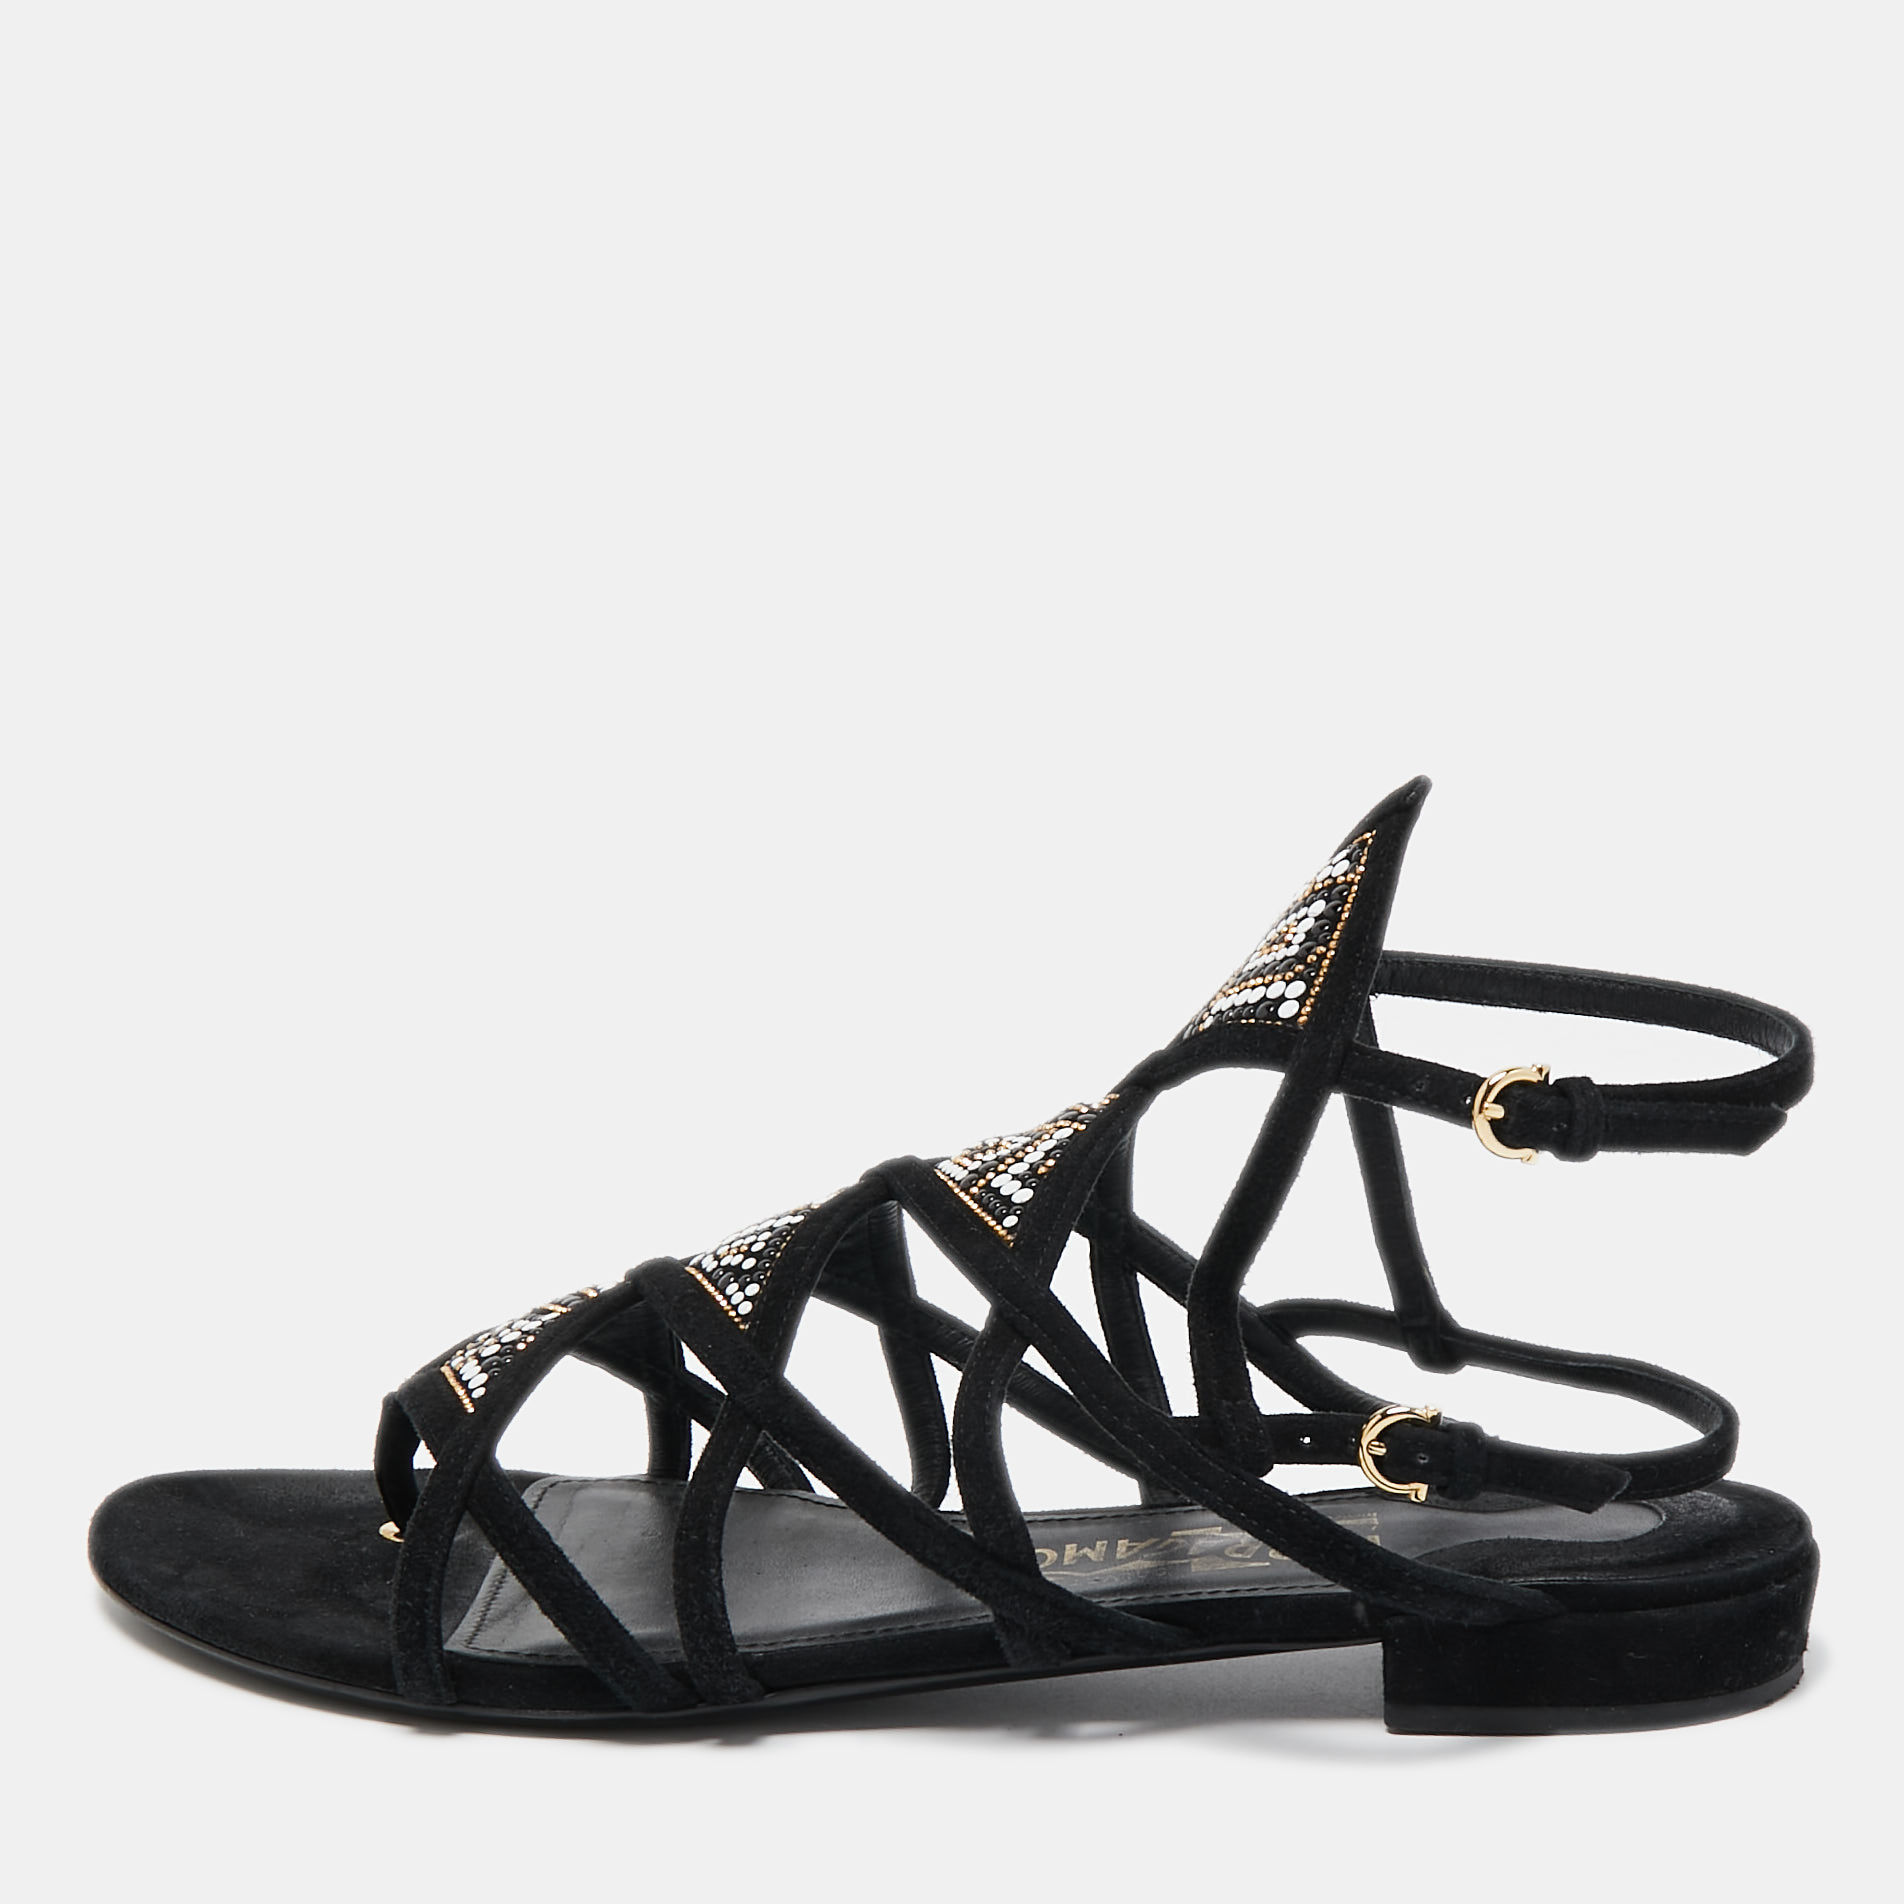 Pre-owned Ferragamo Black Suede Embellished Slingback Flat Sandals Size 39